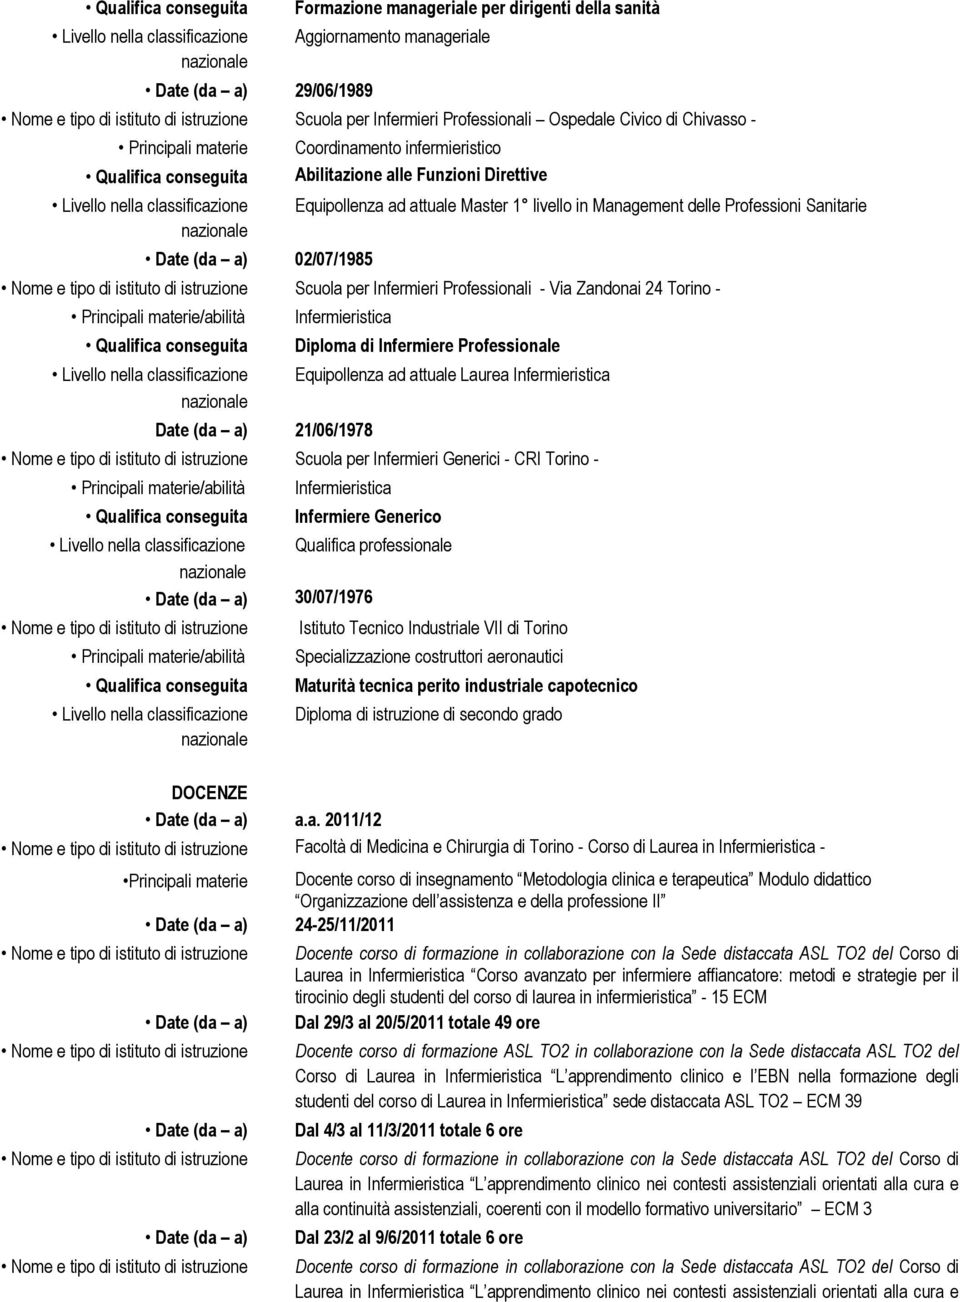 Infermieristica Date (da a) 21/06/1978 Diploma di Infermiere Professionale Equipollenza ad attuale Laurea Infermieristica Scuola per Infermieri Generici - CRI Torino - /abilità Infermieristica